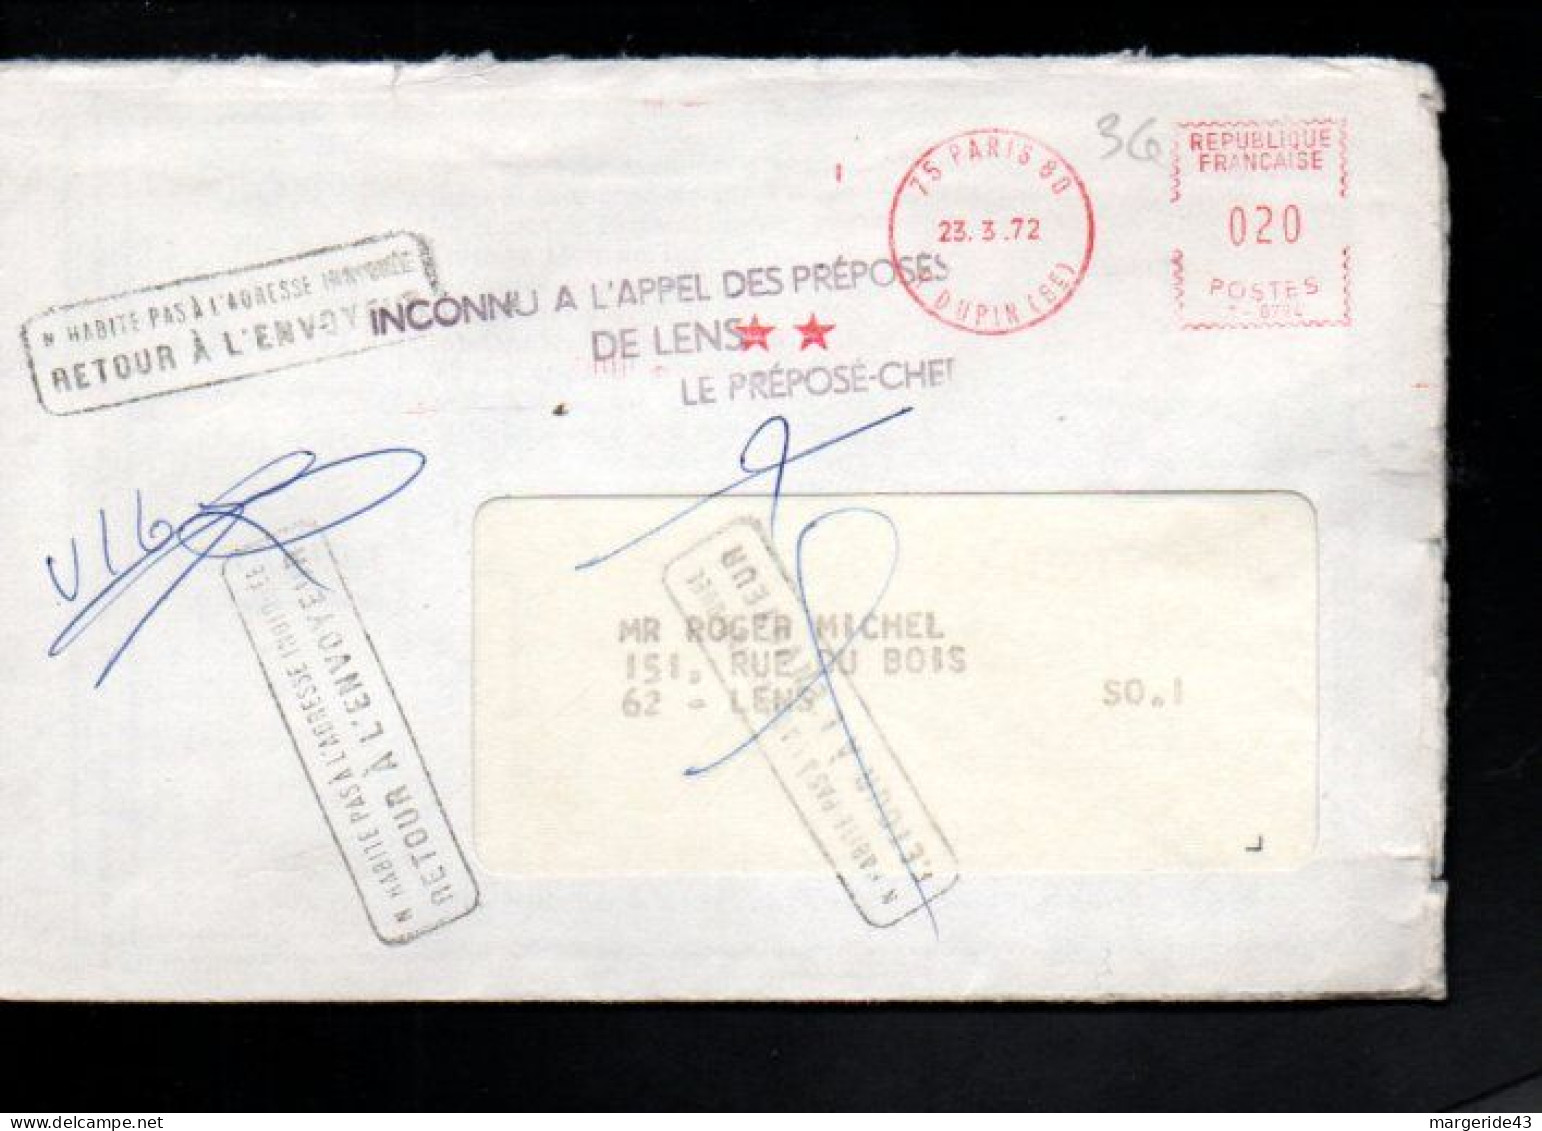 GRIFFE INCONNU A L'APPEL DES PREPOSES DE LENS   LE PREPOSECJHEF 1972 - Manual Postmarks